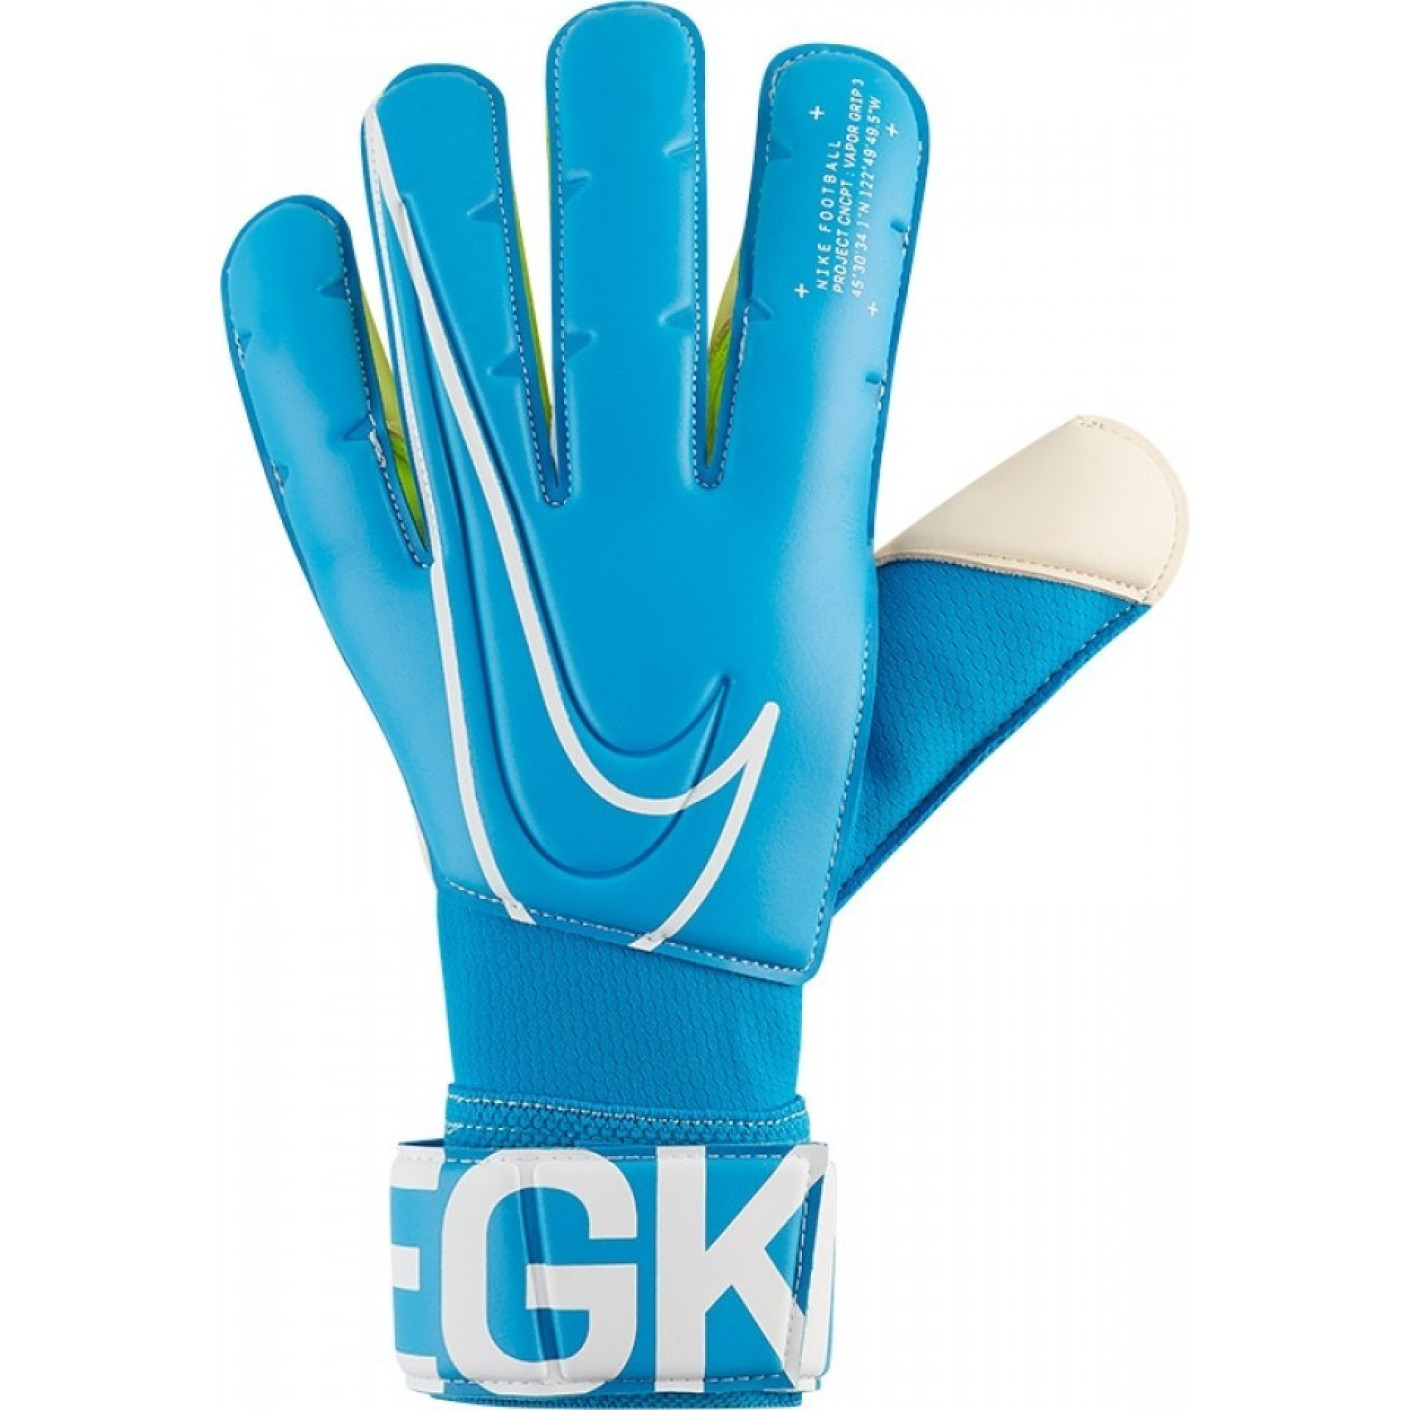 Nike Vapor Grip 3 Keepershandschoenen Blauw Wit